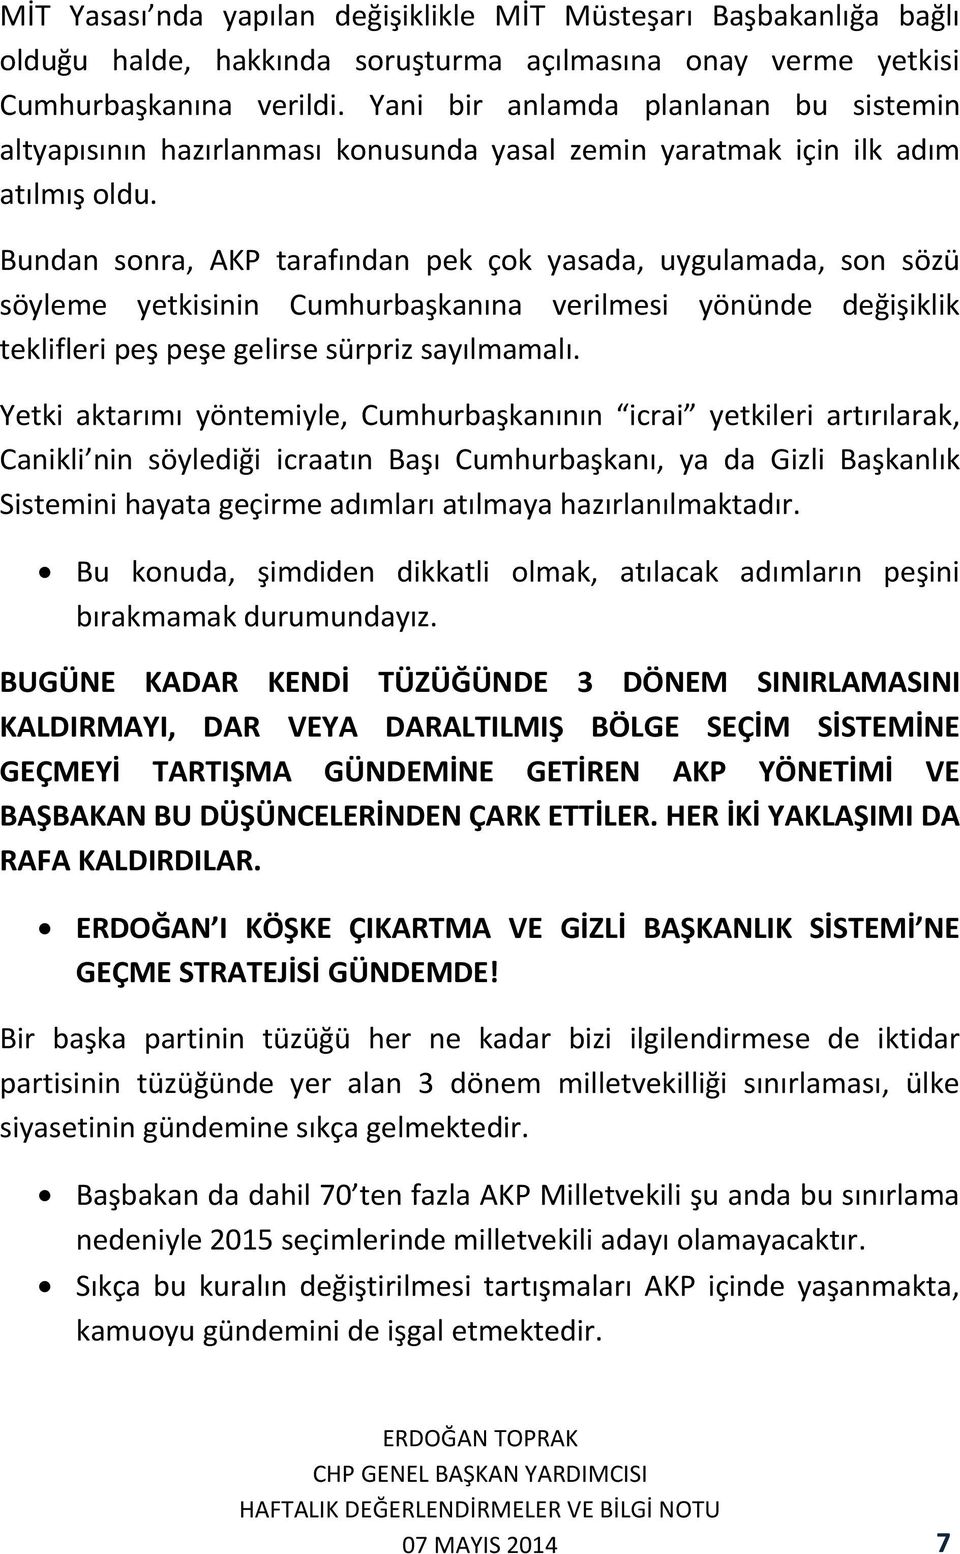 Bundan sonra, AKP tarafından pek çok yasada, uygulamada, son sözü söyleme yetkisinin Cumhurbaşkanına verilmesi yönünde değişiklik teklifleri peş peşe gelirse sürpriz sayılmamalı.